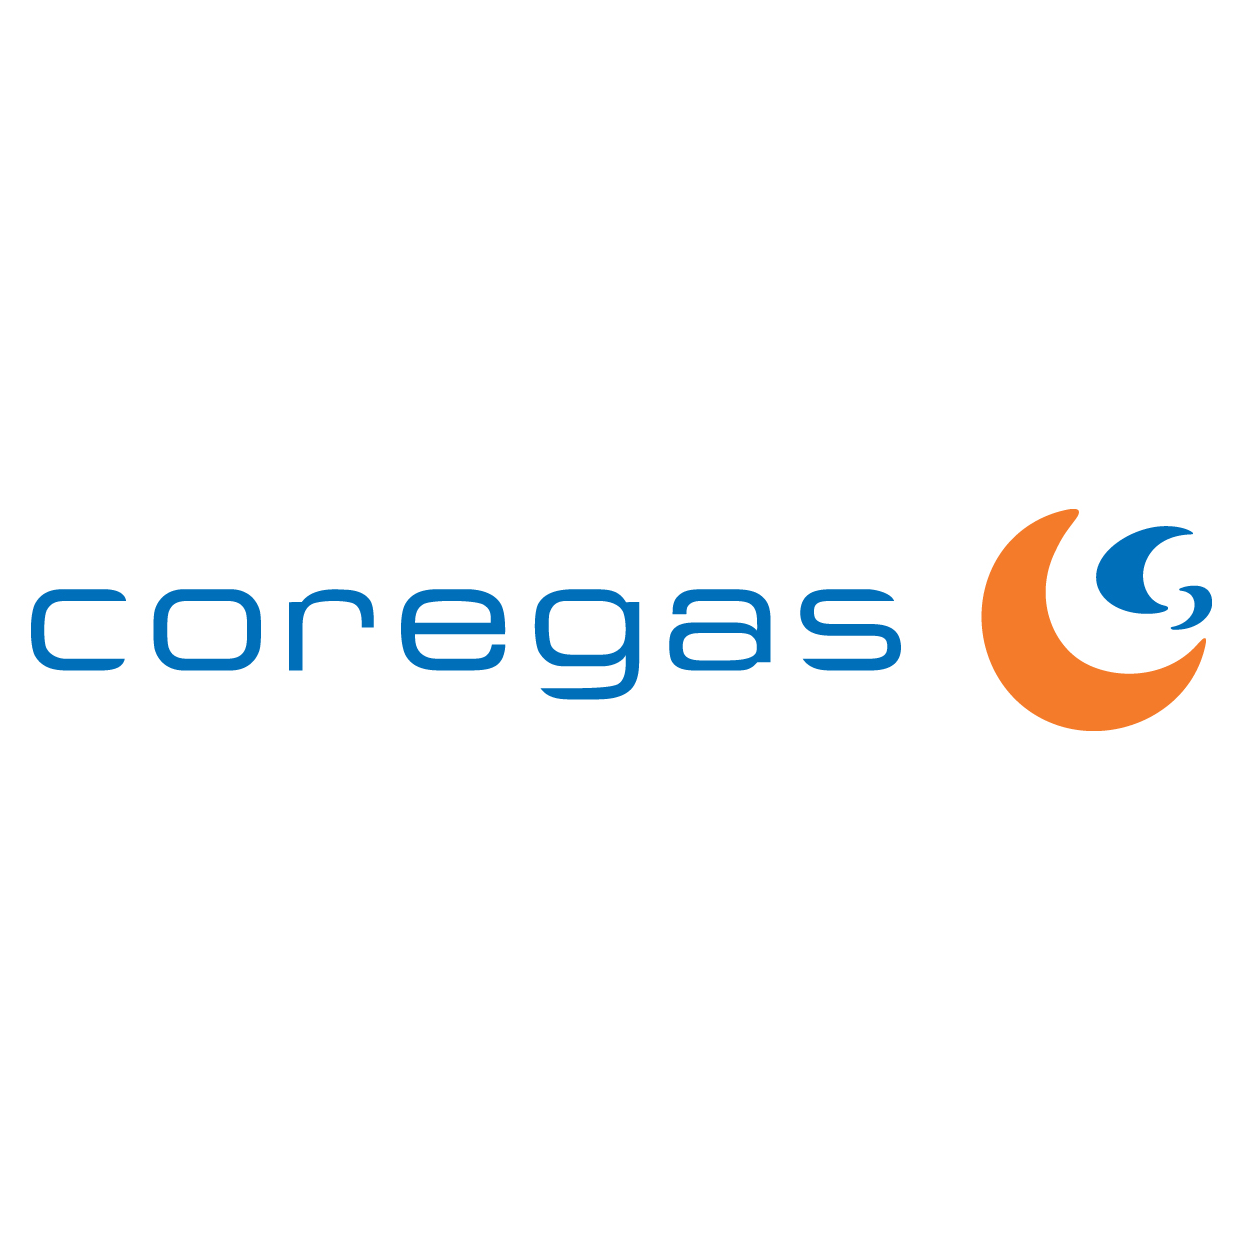 CoreGas